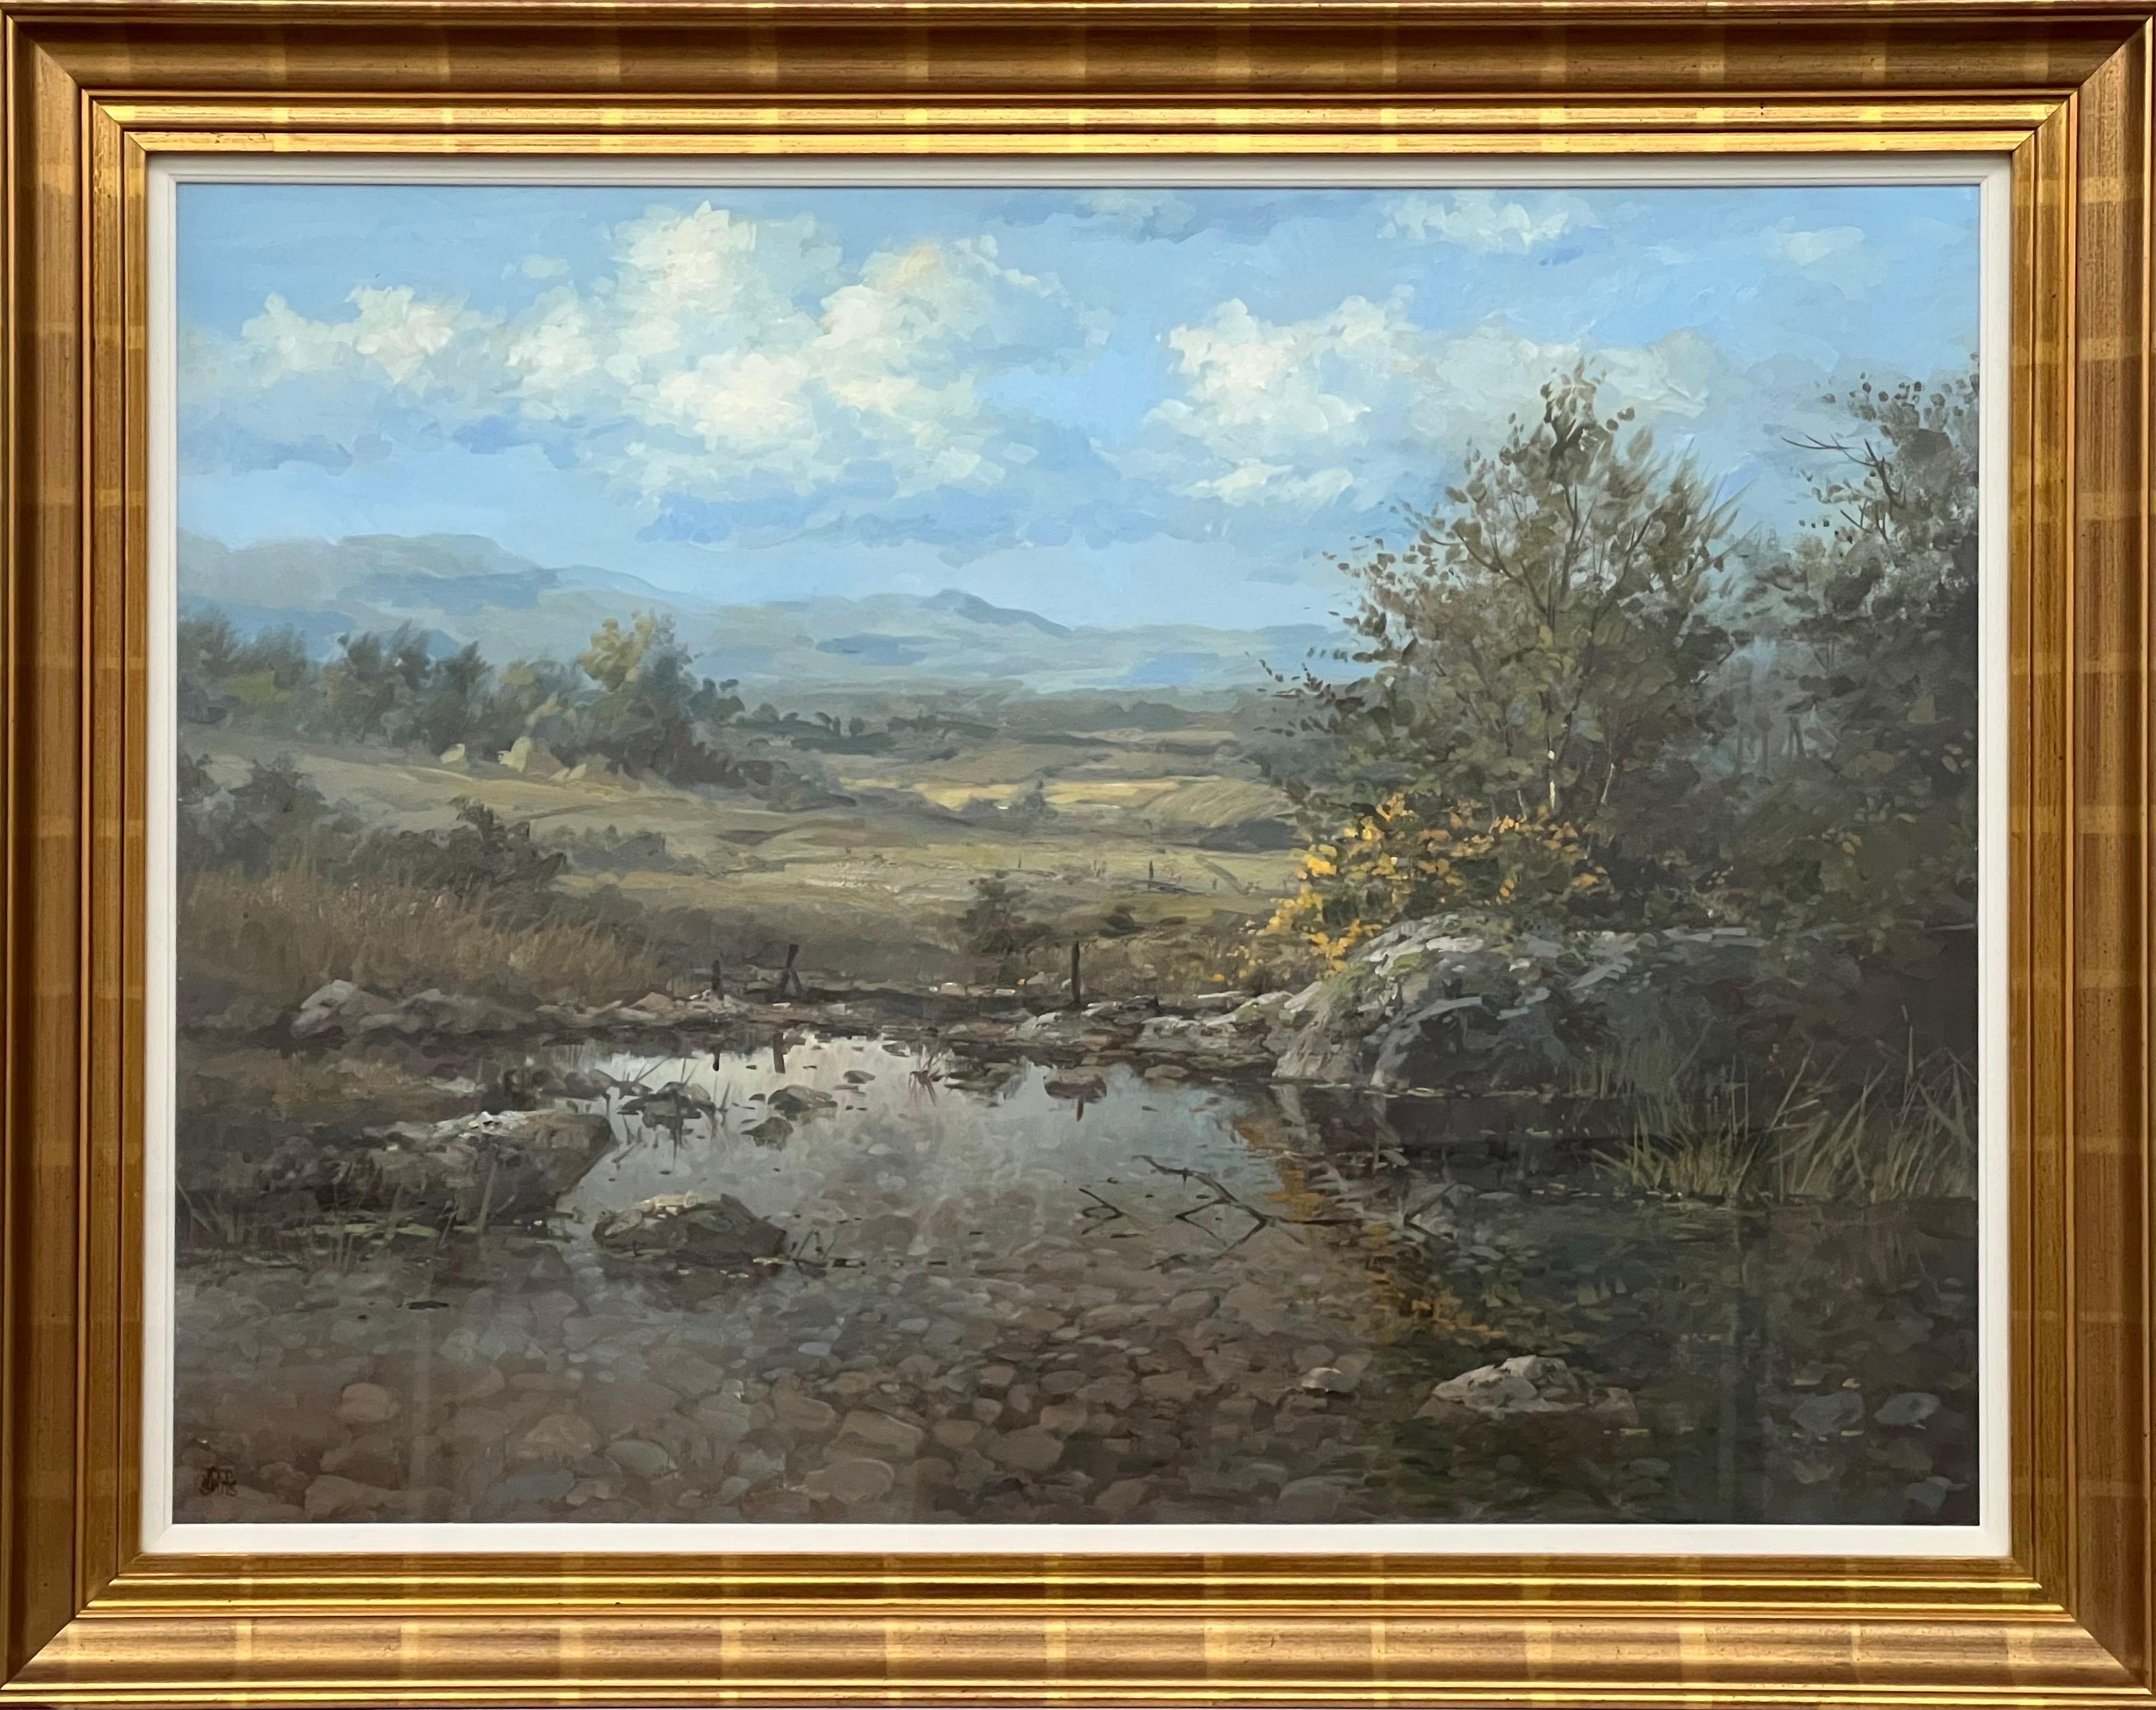 Abstract Painting Joop Smits - Peinture de paysage fluvial avec montagnes et arbres par un artiste néerlandais du 20e siècle 